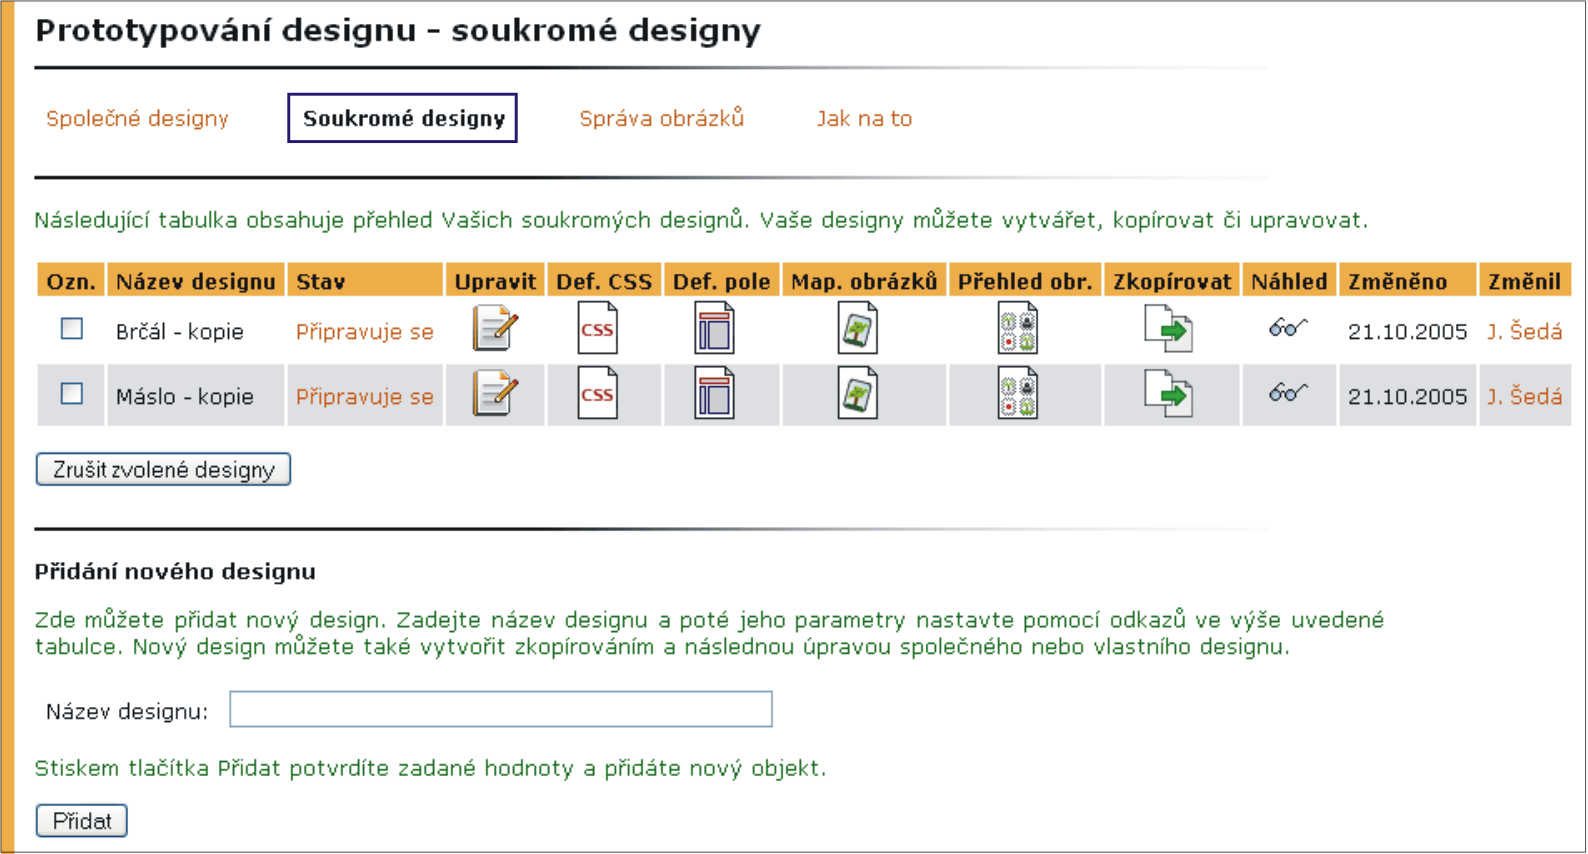 9 PŘIZPŮSOBENÍ INFORMAČNÍHO SYSTÉMU pod jednotlivými ikonami dostupná editace položek (ve společných designech je to jen prohlížení).